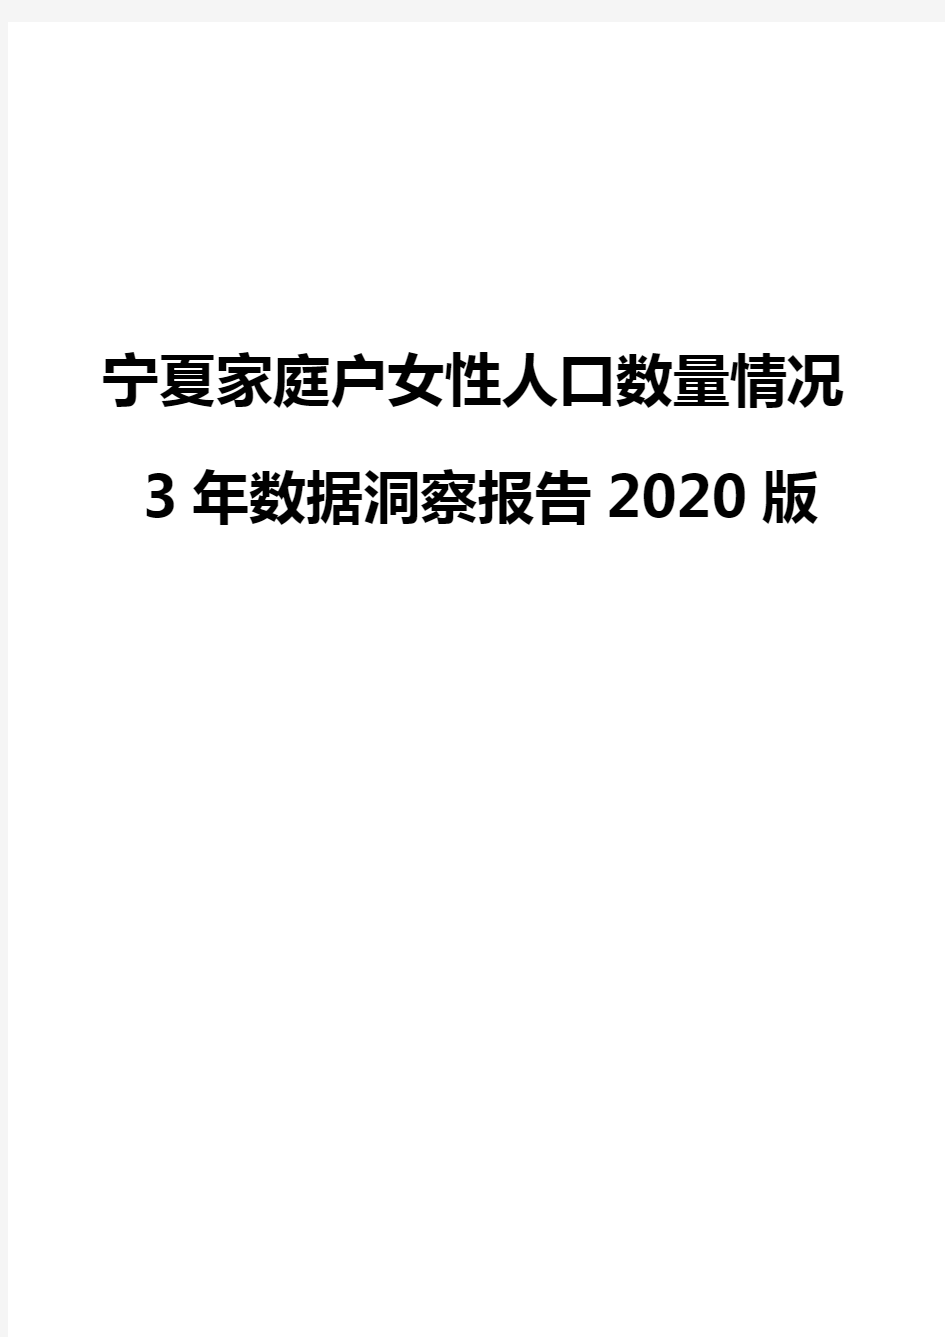 宁夏家庭户女性人口数量情况3年数据洞察报告2020版